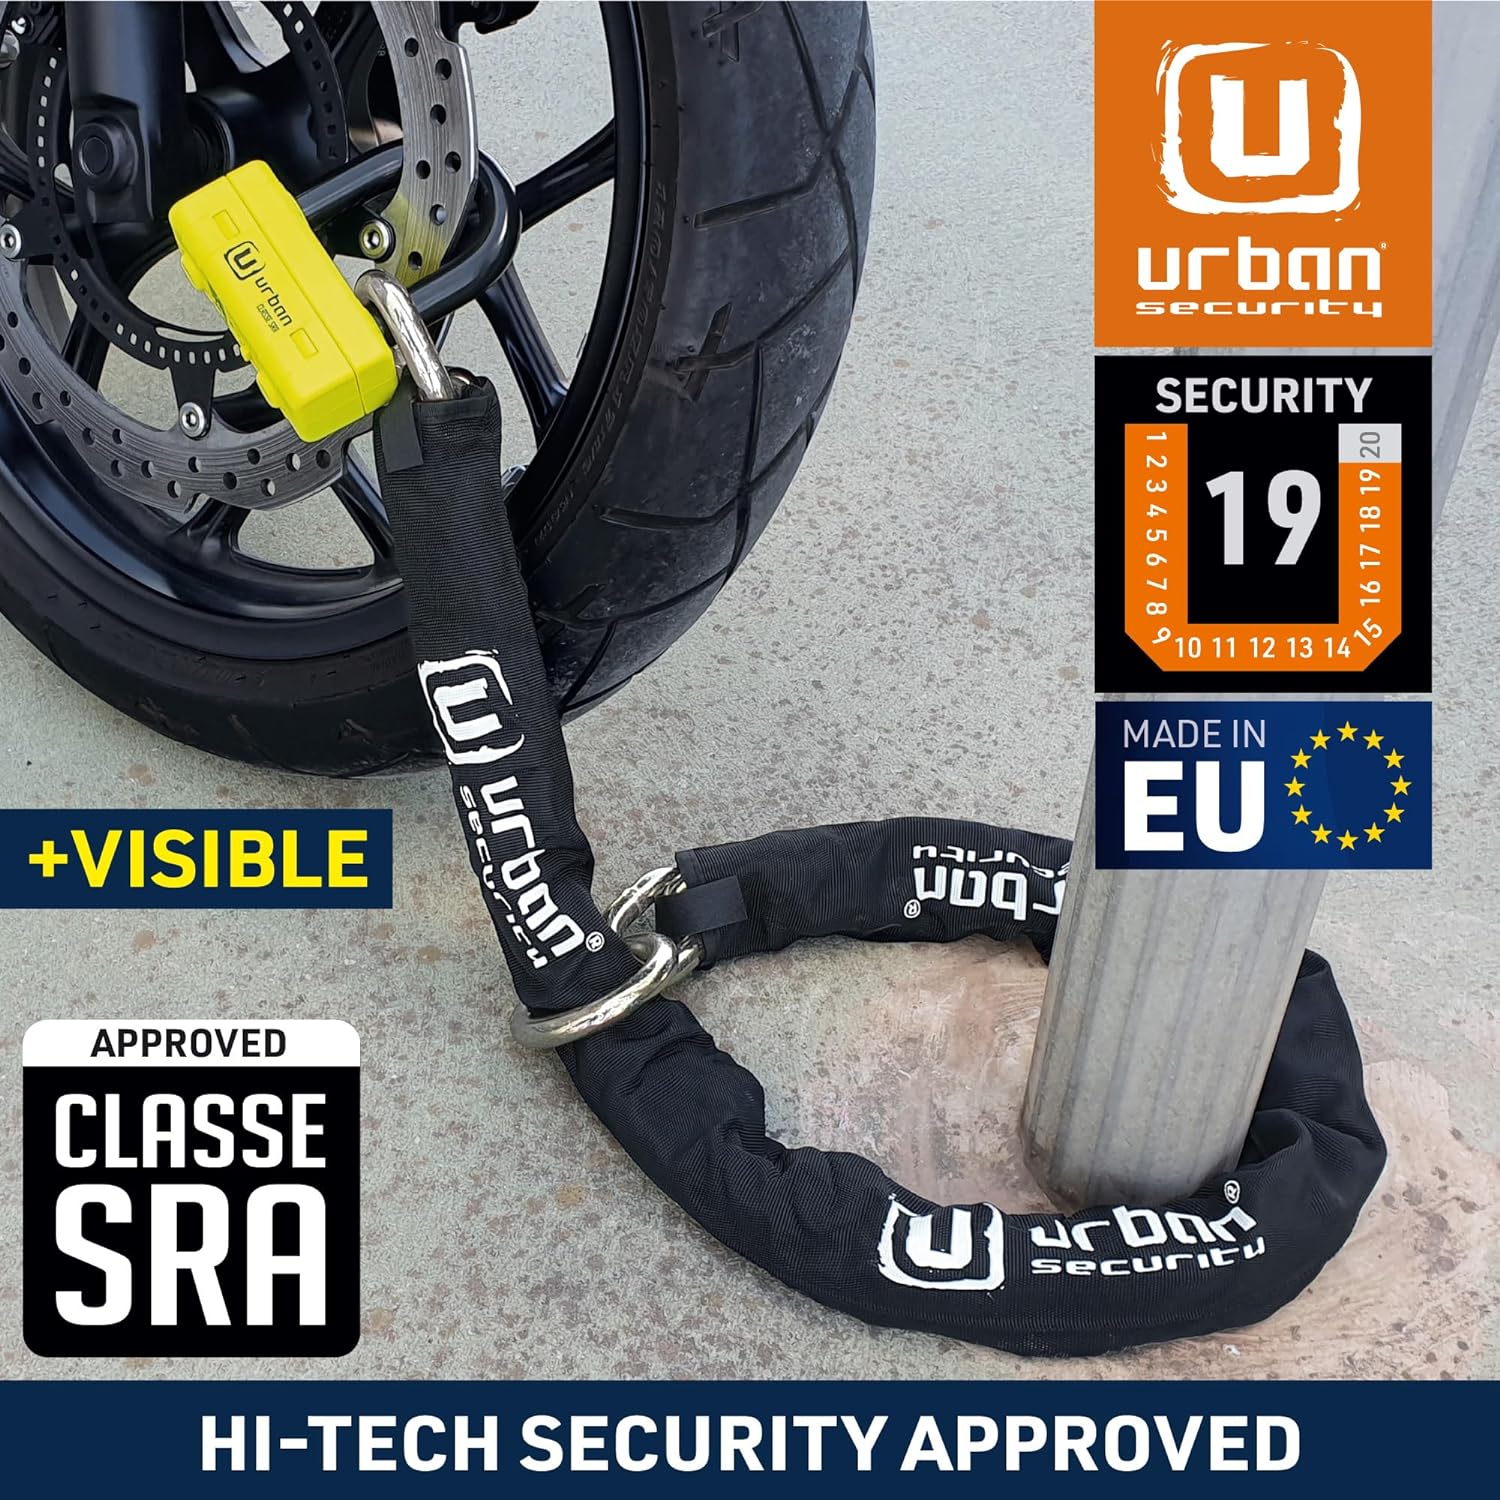 Urban Security UR74120L 120cm Motorcycle Loop Chain + Lock - Security Level 19-UR74120L-Security-Pyramid Motorcycle Accessories